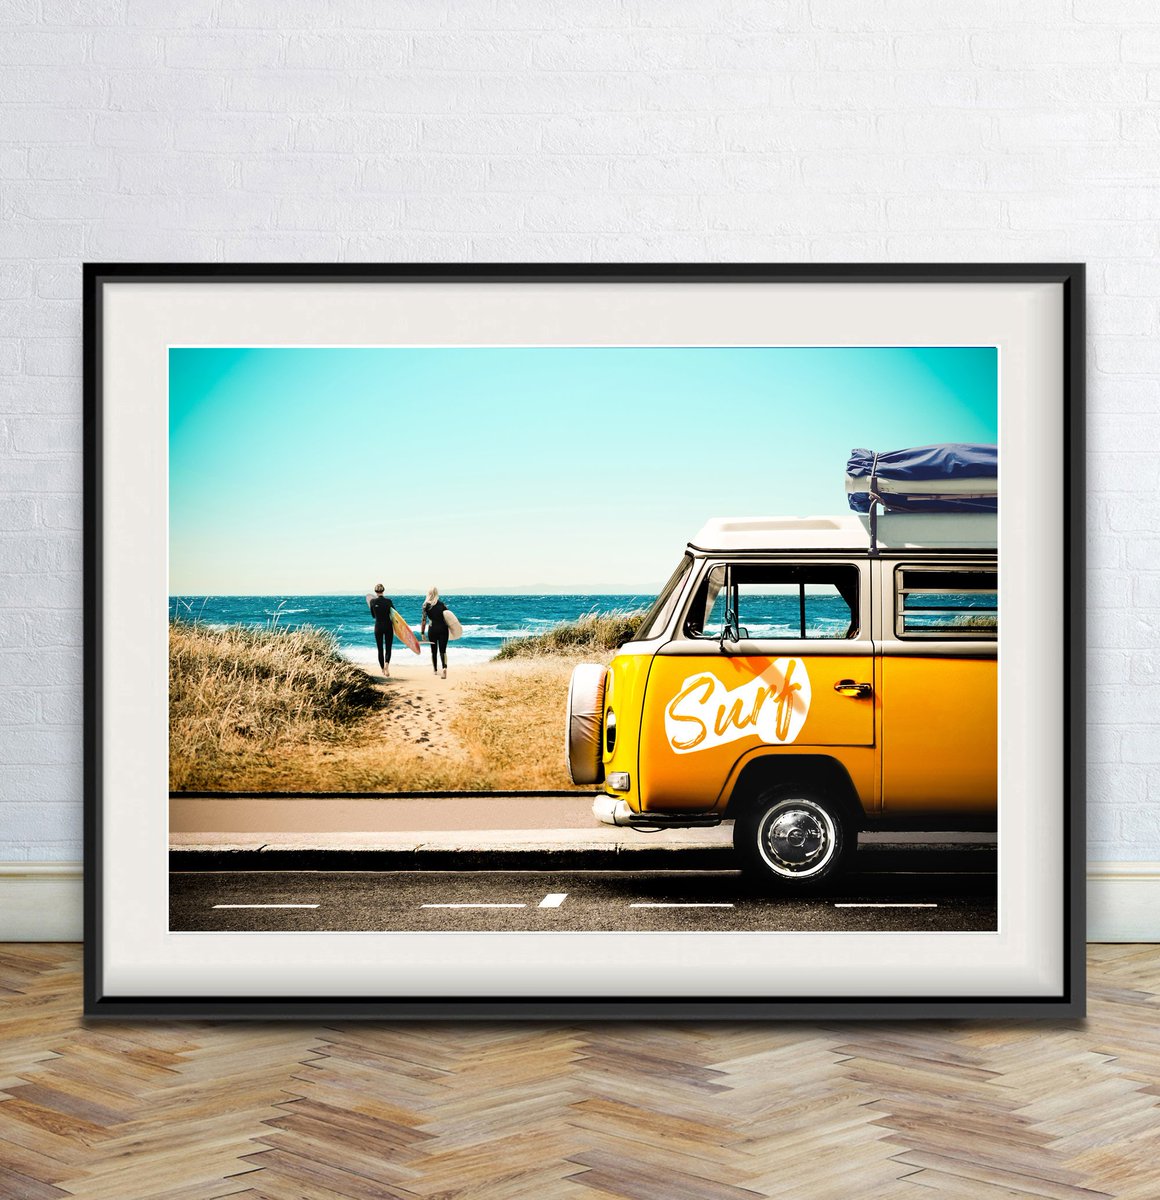 VW Camper Van. Surf. California. Digital download. debixaddi.etsy.com etsy.me/2ODlTCp #vwcampervan #vwtransporter #vwkombi #vwsurf #surfbeach #surferart #surfprint